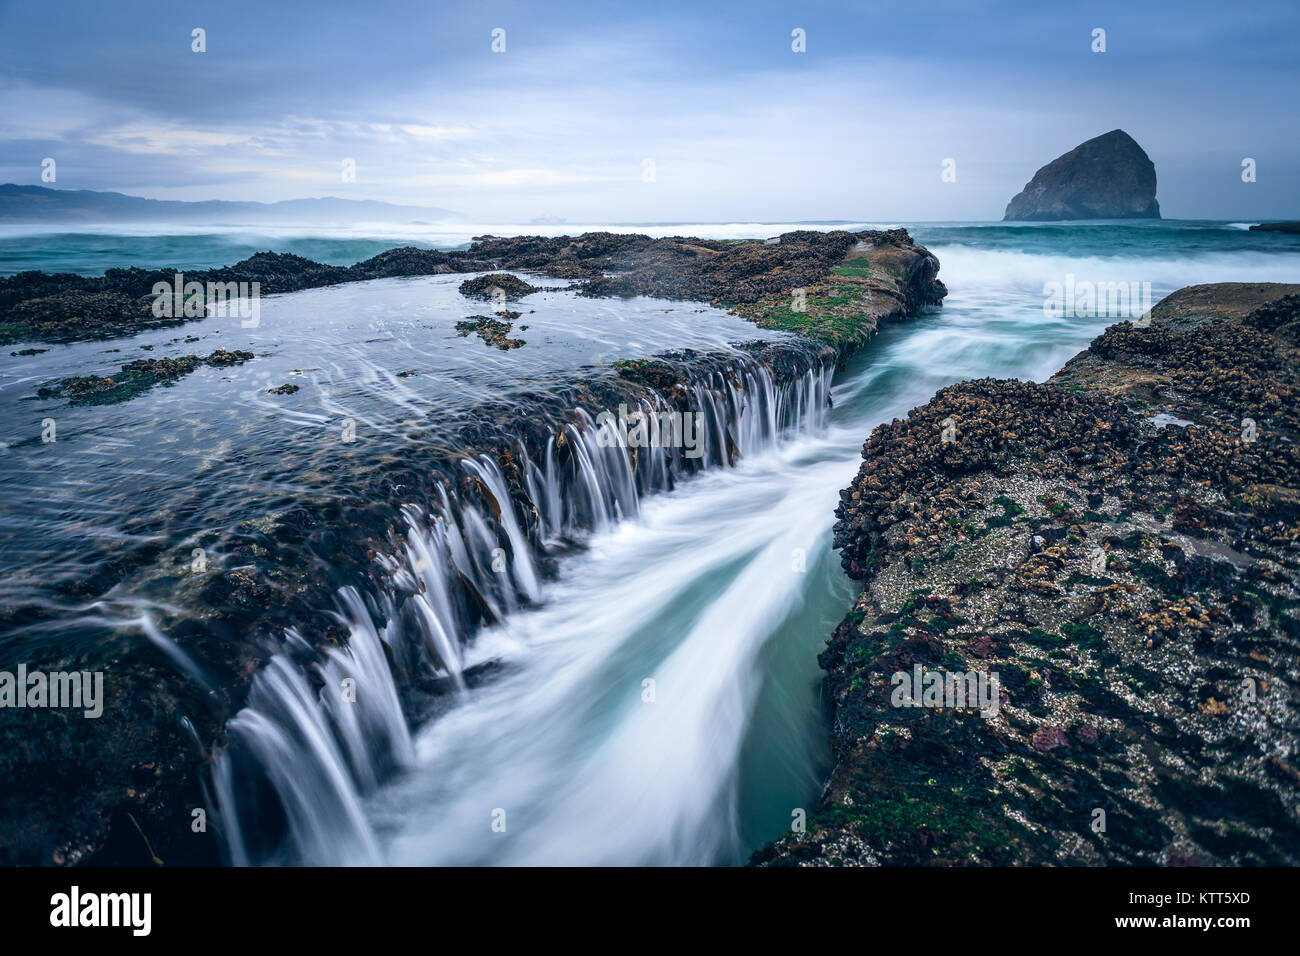 Coastal landscape, Cape Kiwanda, Oregon, United States Stock Photo